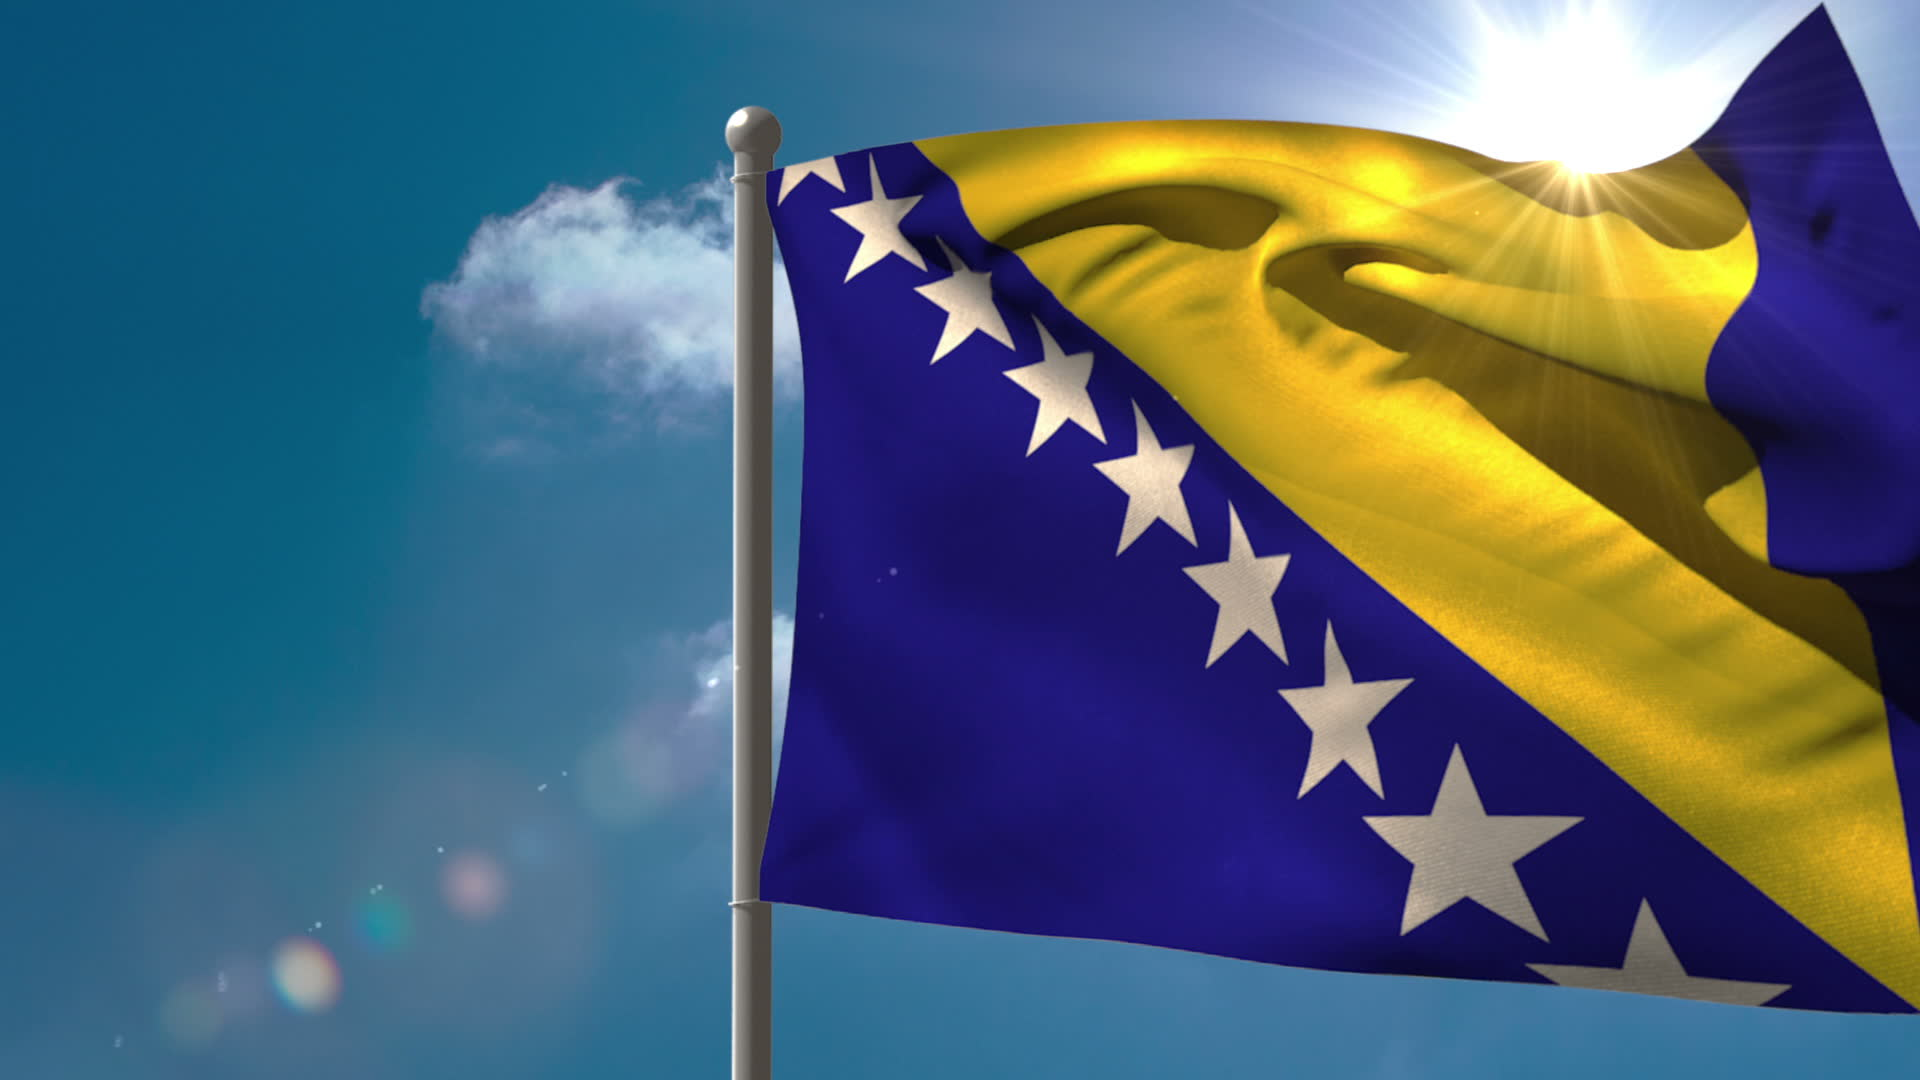 Οι ΥΠΕΞ της ΕΕ ενέκριναν τη χορήγηση καθεστώτος υποψήφιας για ένταξη χώρας στη Βοσνία-Ερζεγοβίνη